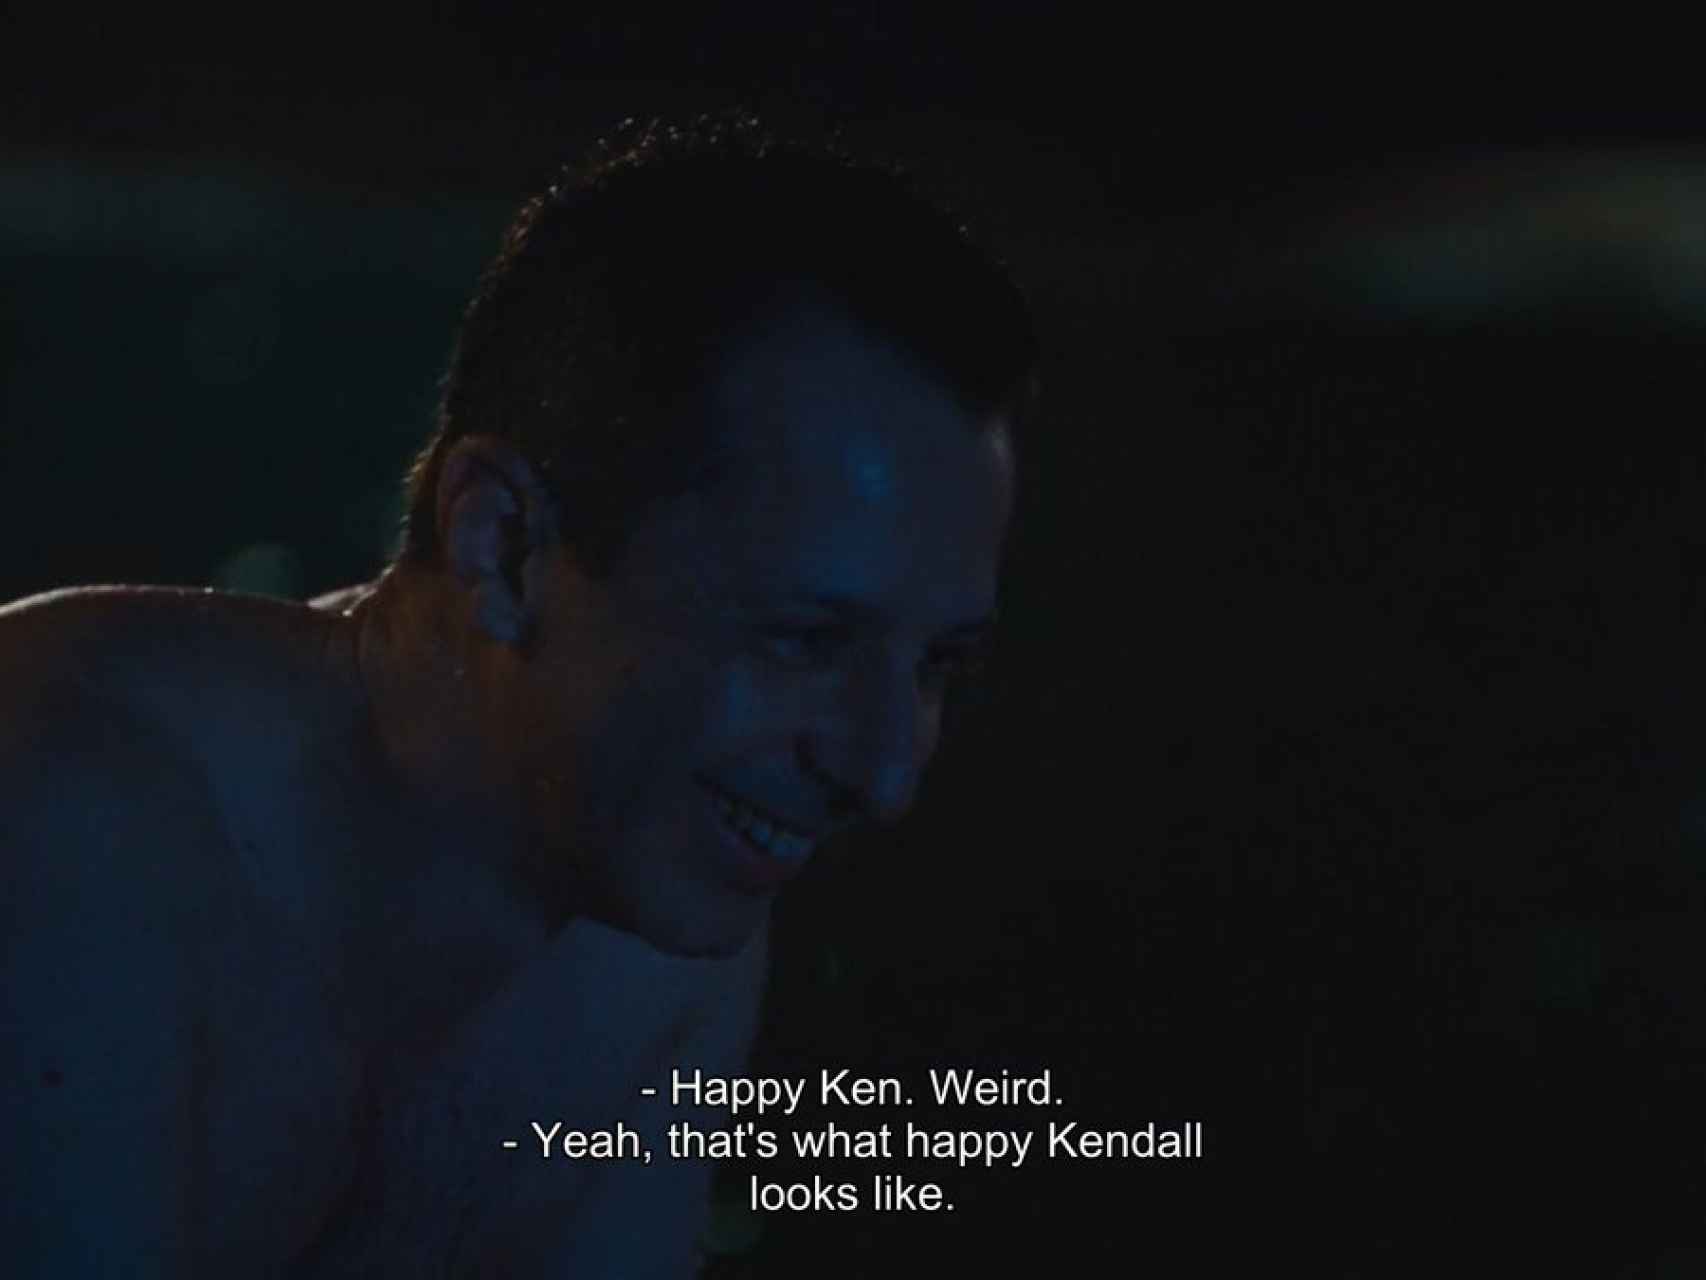 Sí, así es Kendall cuando está feliz.